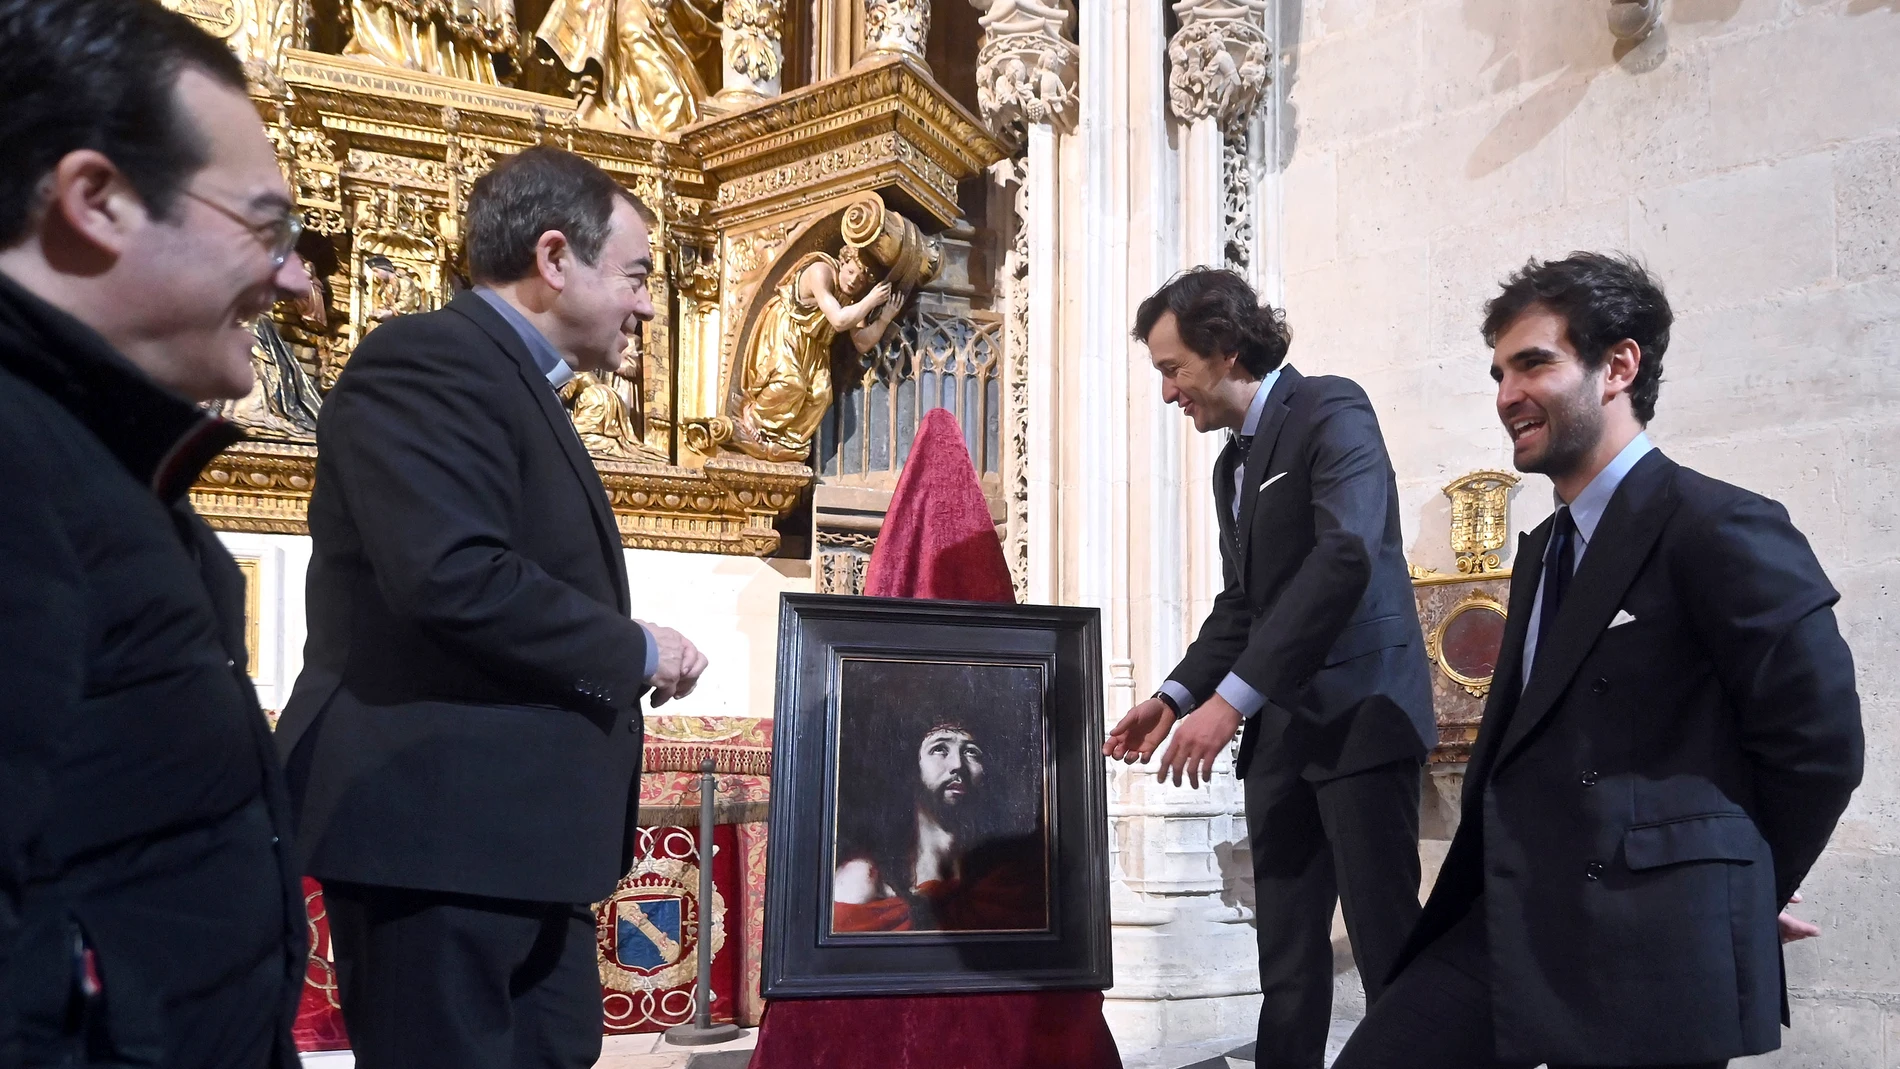 Presentación de la pintura en la catedral de Burgos